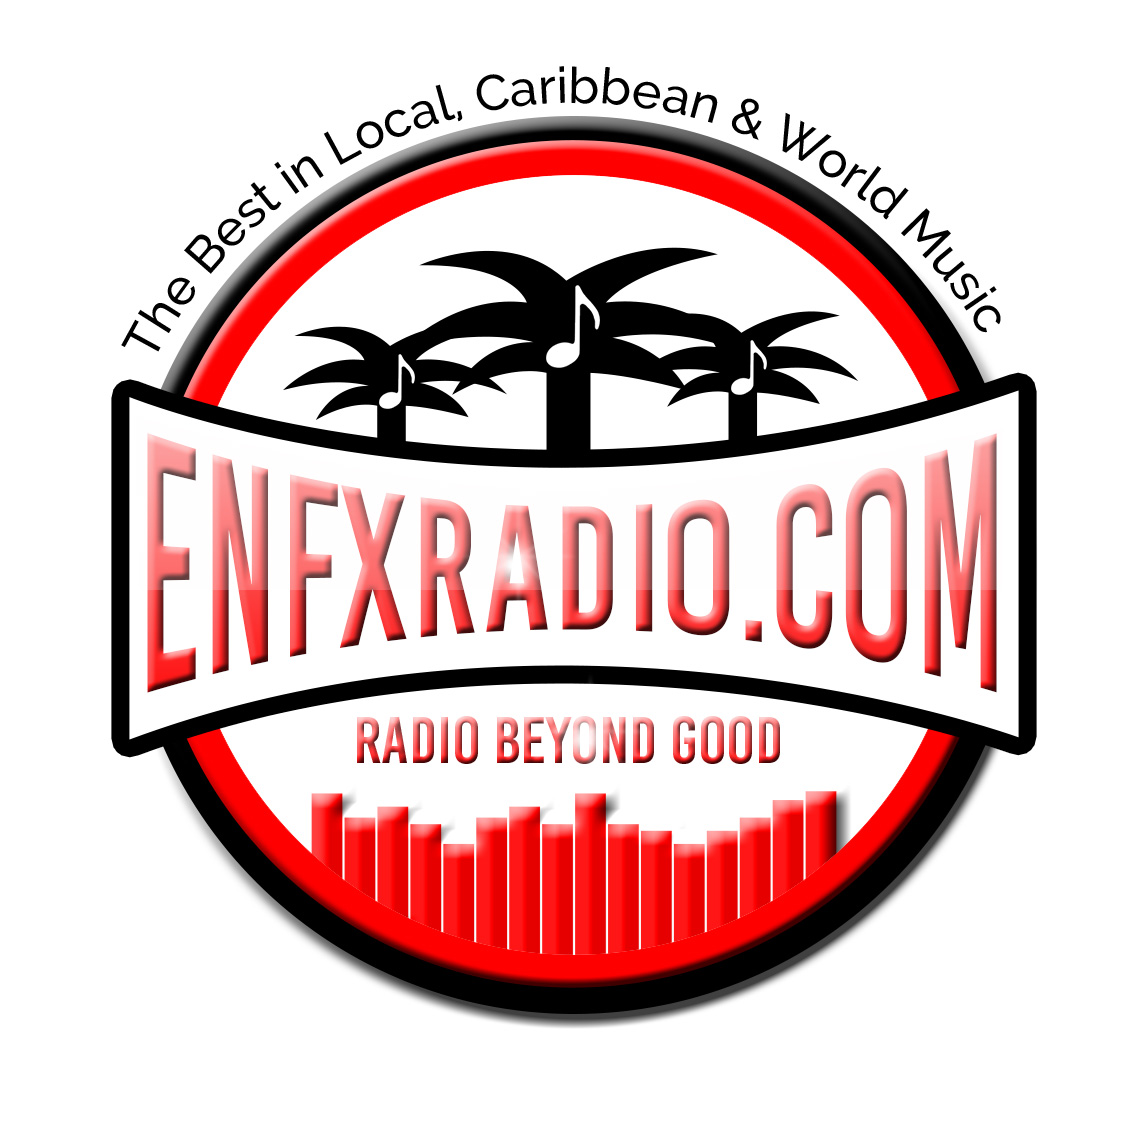 Enfx radio trinidad